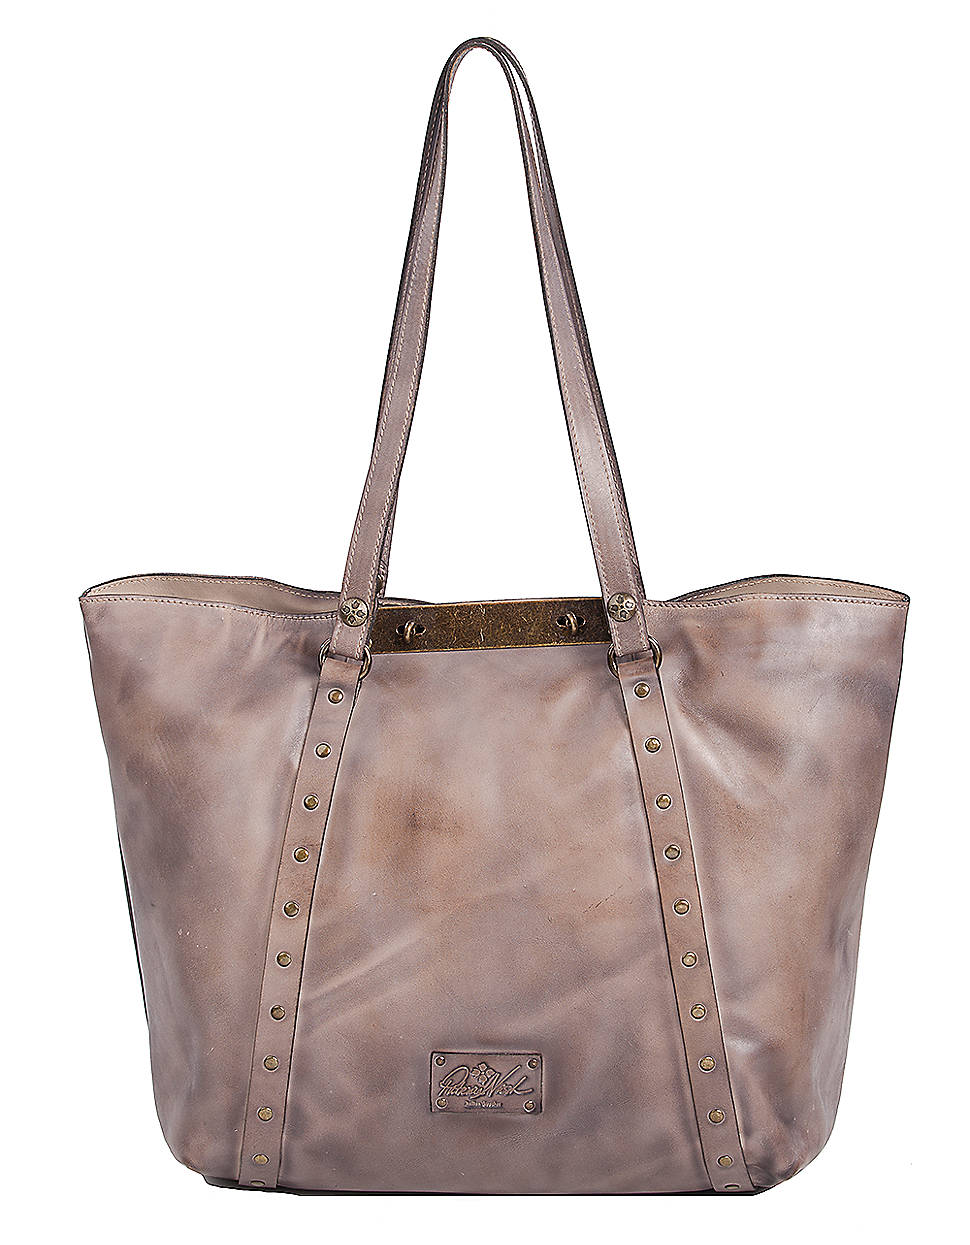 Patricia nash Benvenuto Leather Tote Bag in Gray | Lyst